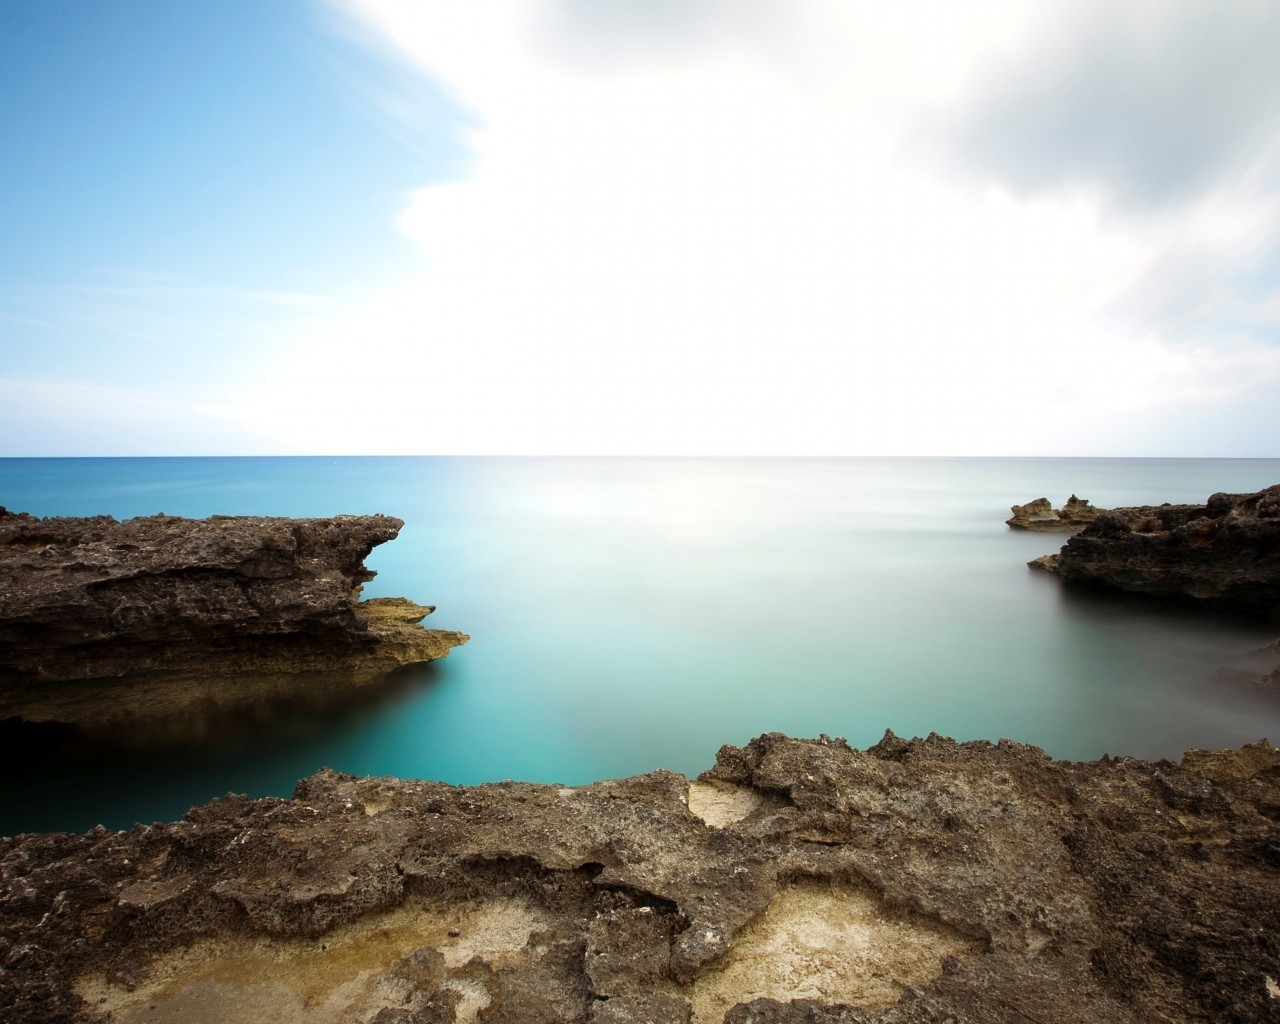 Calm Sea Landscape for 1280 x 1024 resolution